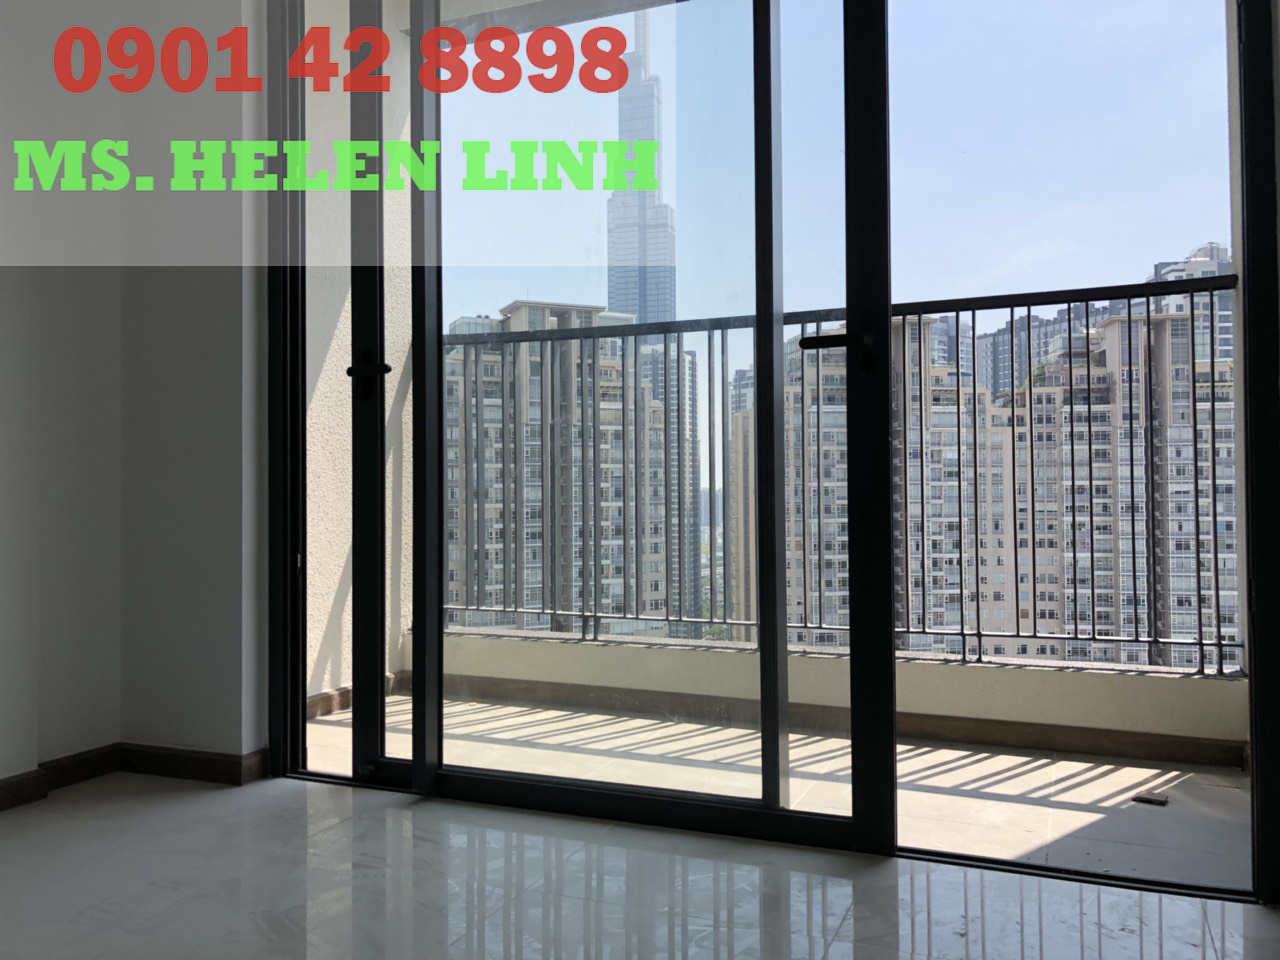 Cho thuê căn hộ 1PN-50m2 Opal Tower - Saigon Pearl. Hotline PKD 090142889898